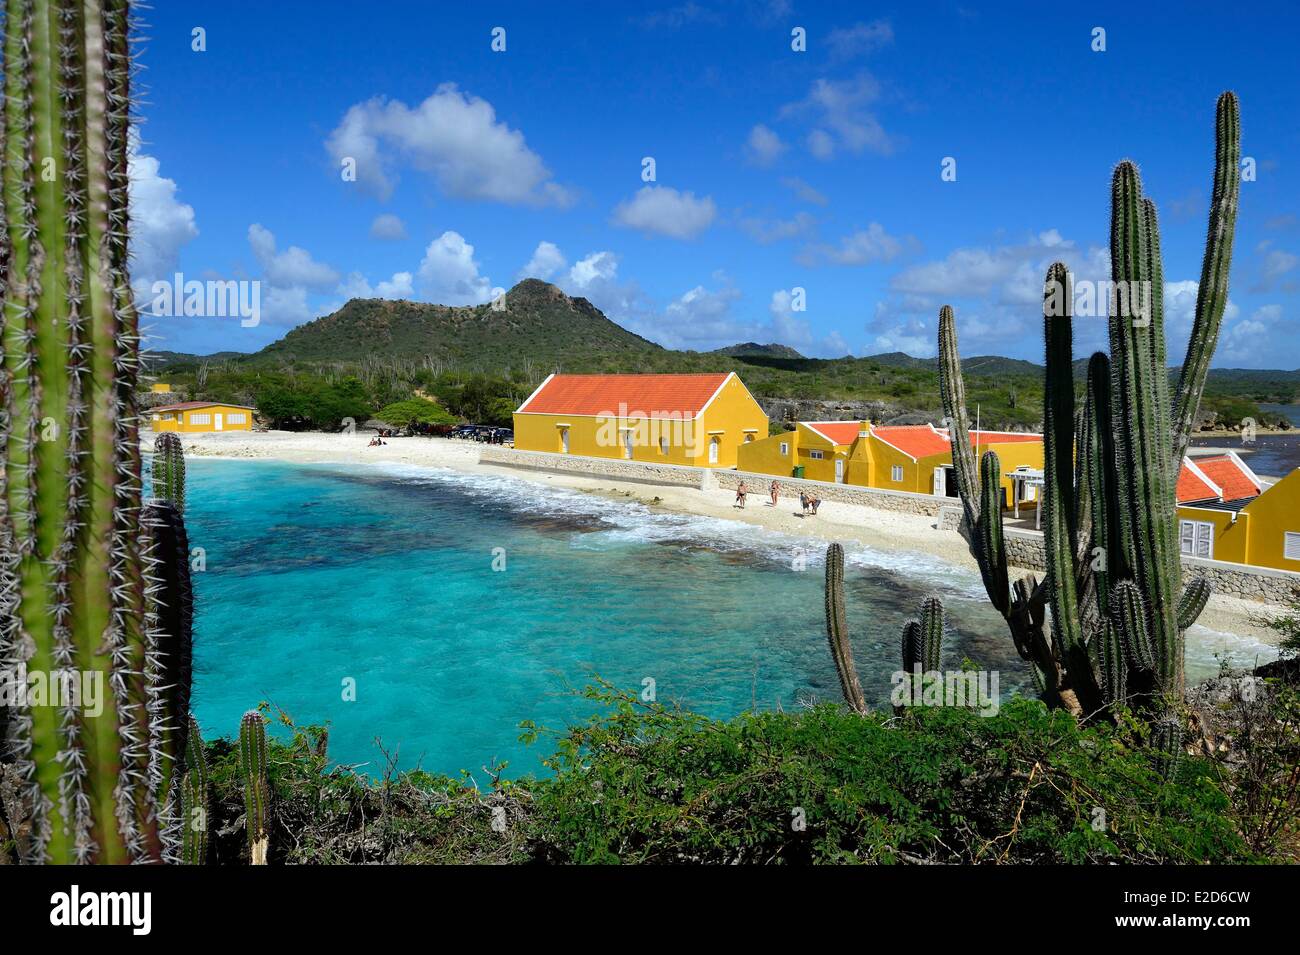 Niederländische Antillen Bonaire Insel sonnenverwöhnten Strandhaus am Playa Frans Washington Slagbaai National Park Stockfoto